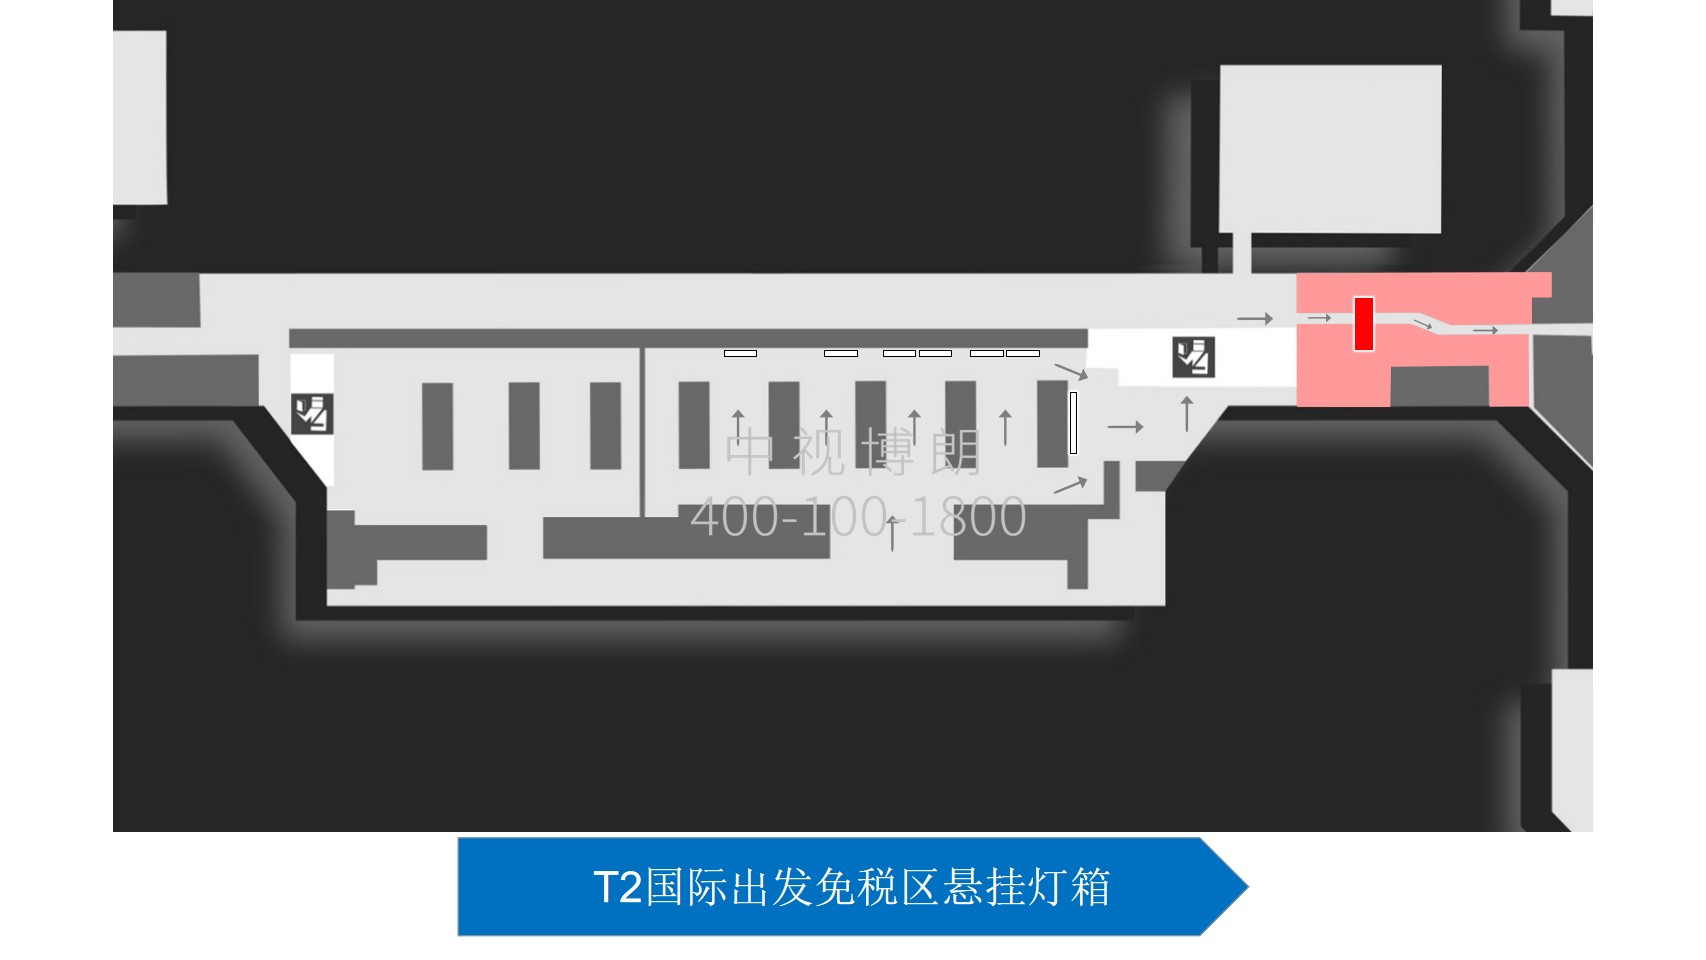 北京首都机场广告-T2 International Departure Duty Free Zone Hanging Light Box位置图